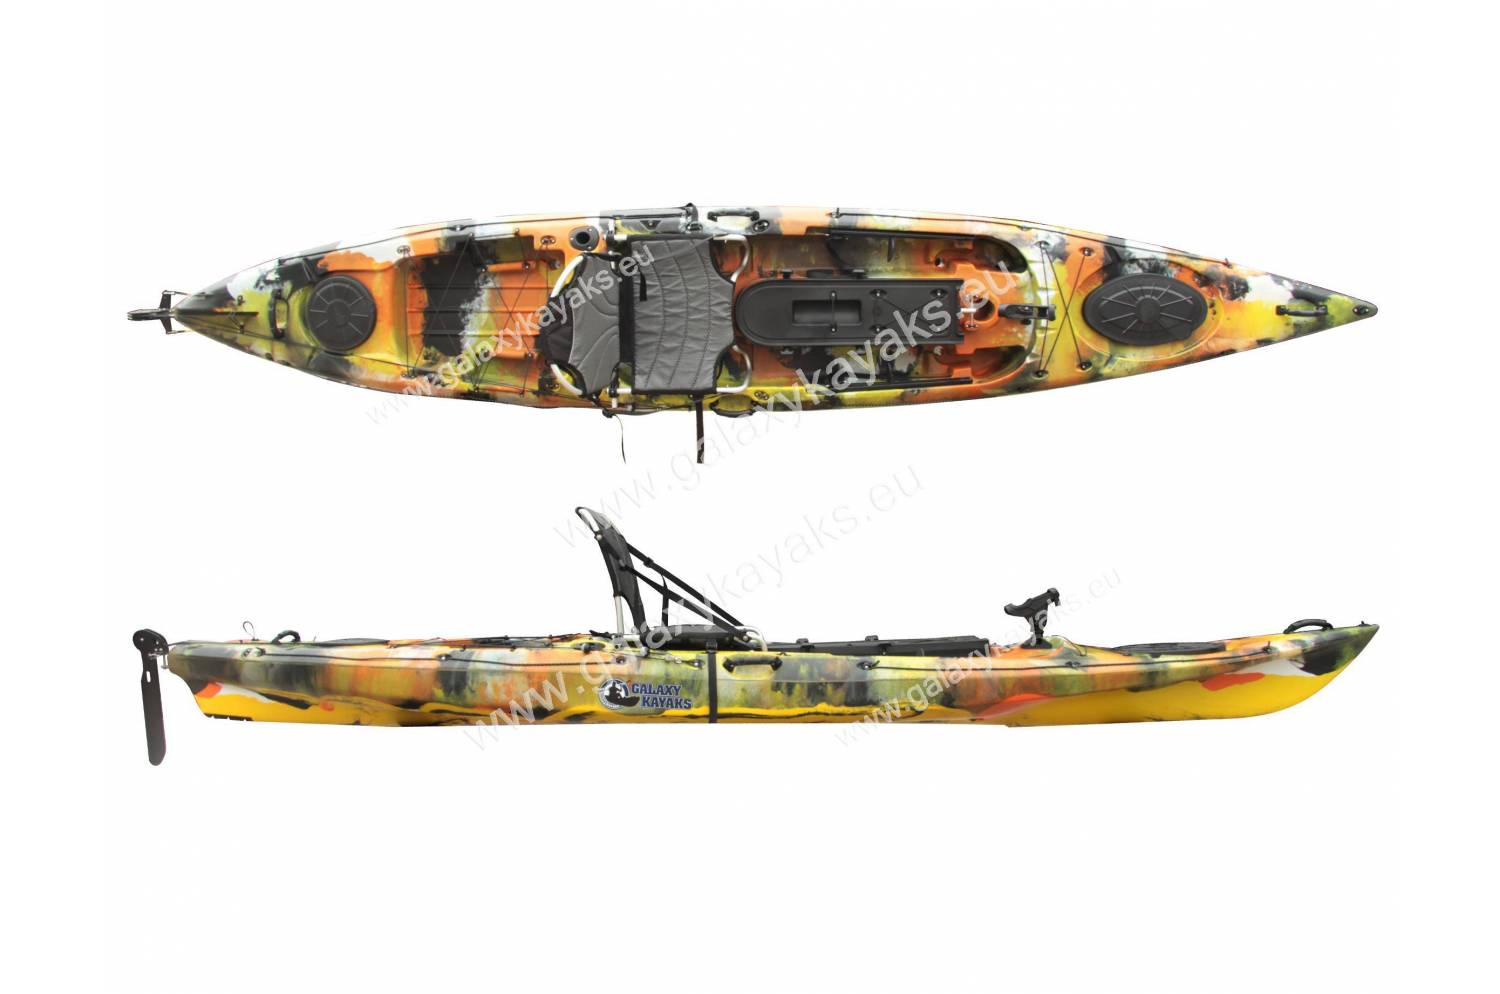 bekræft venligst Gendanne Uanset hvilken Marlin 430 Fiskekajak - Galaxy Kayaks